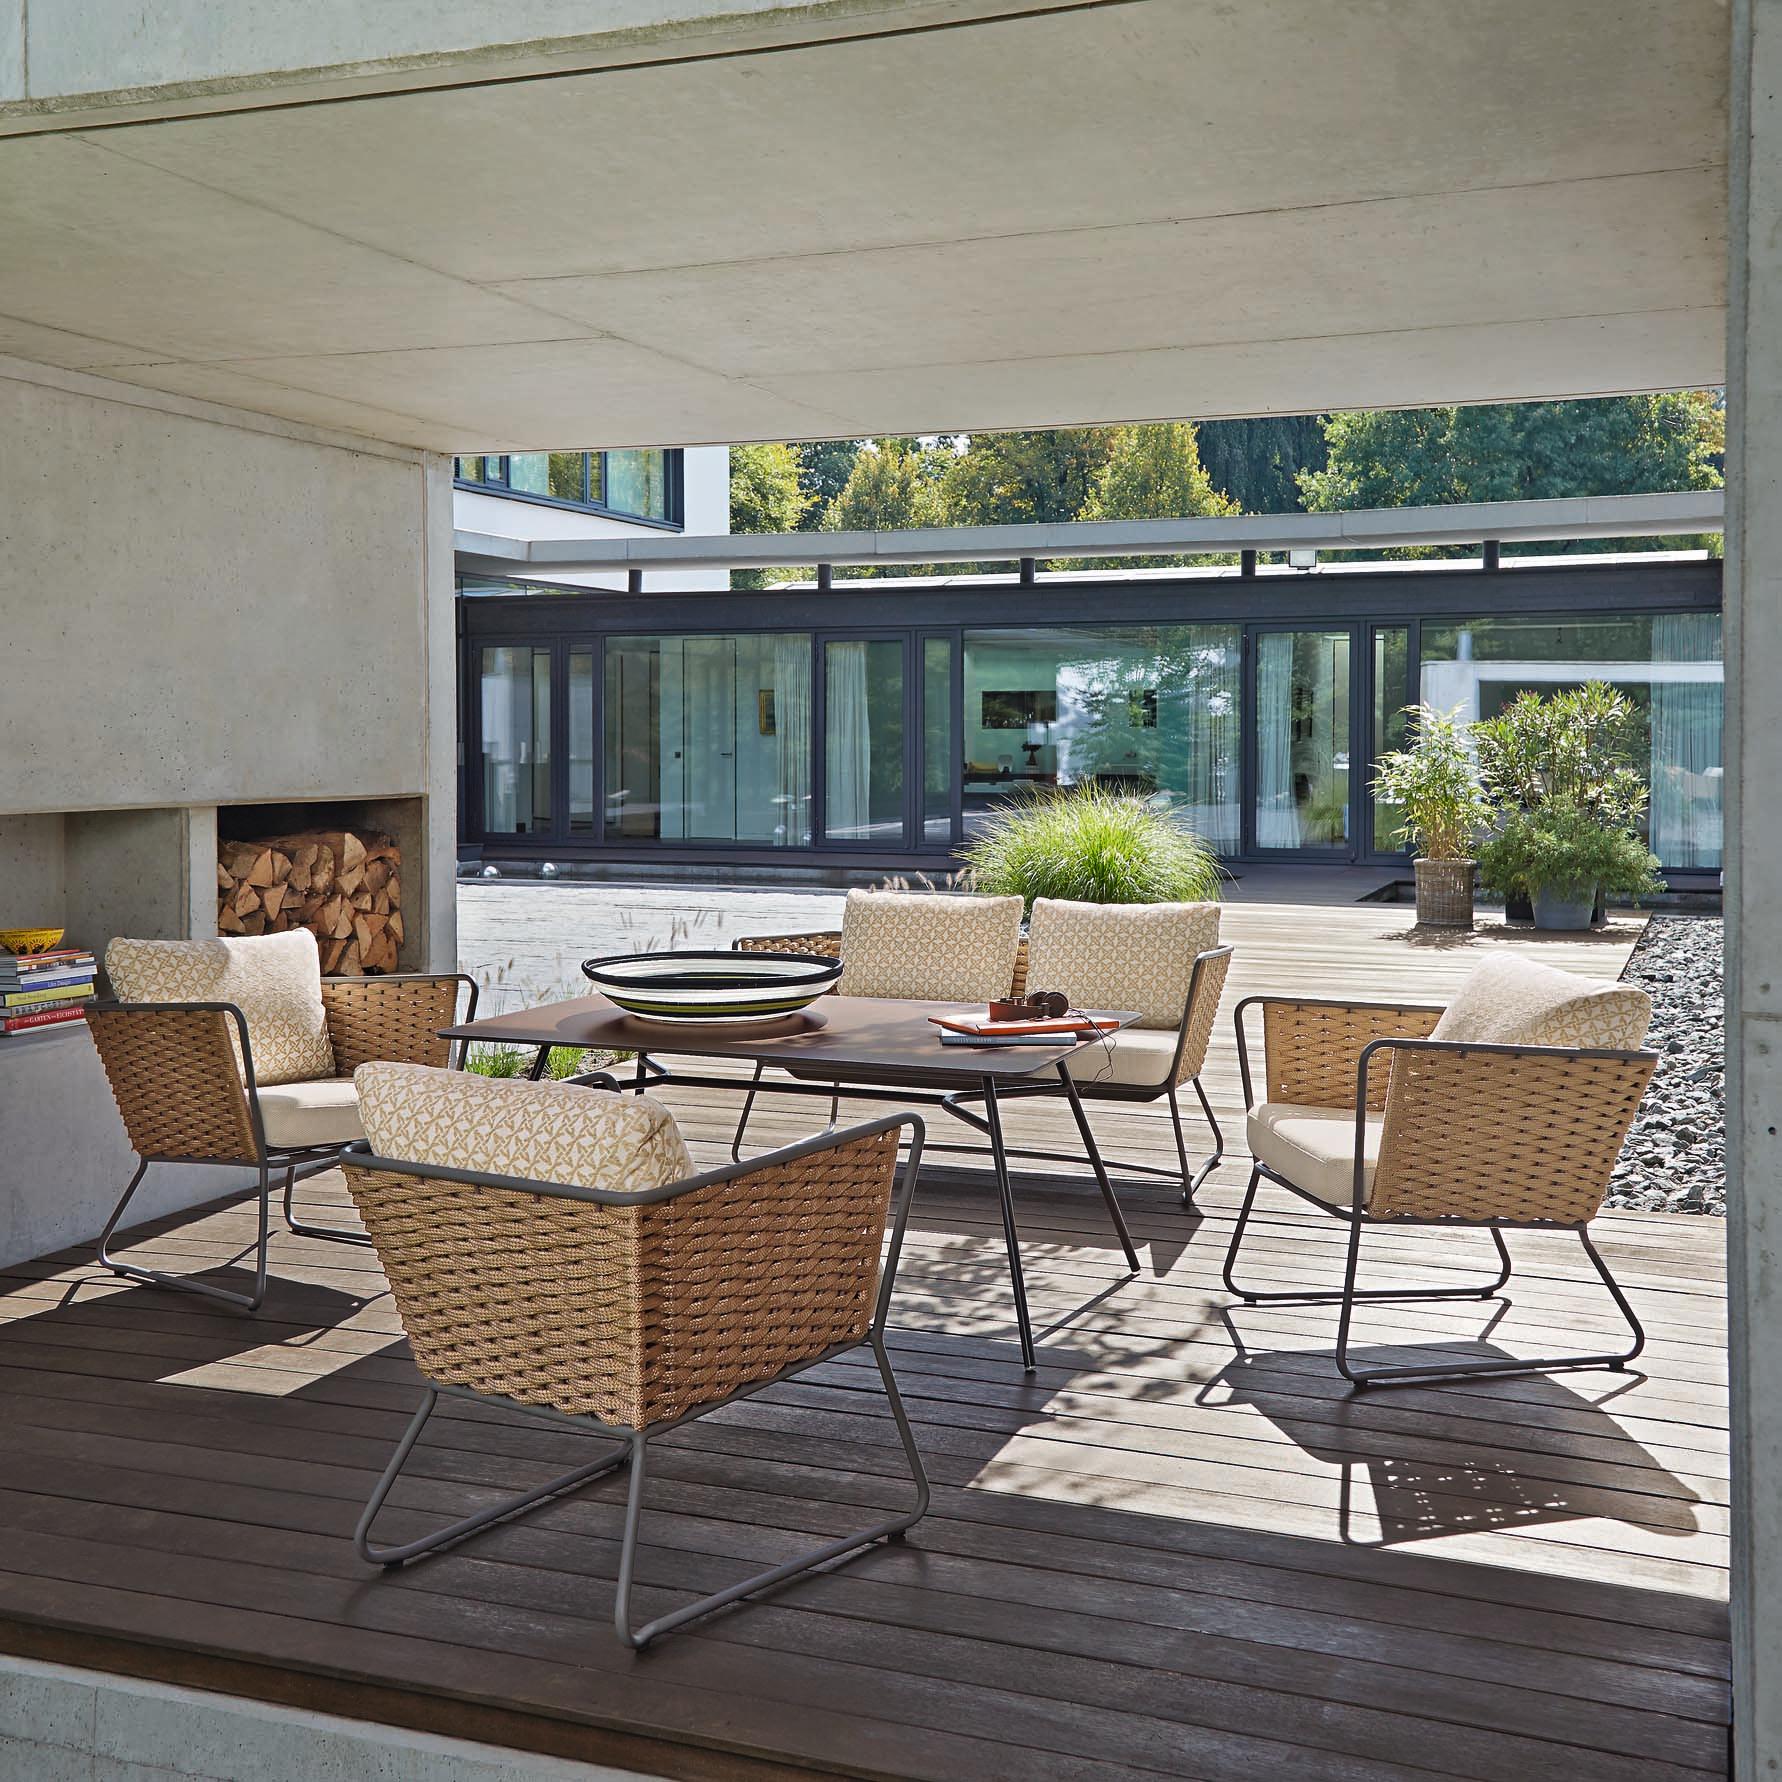 Outdoor-Loungemöbel auf moderner Terrasse #terrassenmöbel #terrassentisch ©Garpa